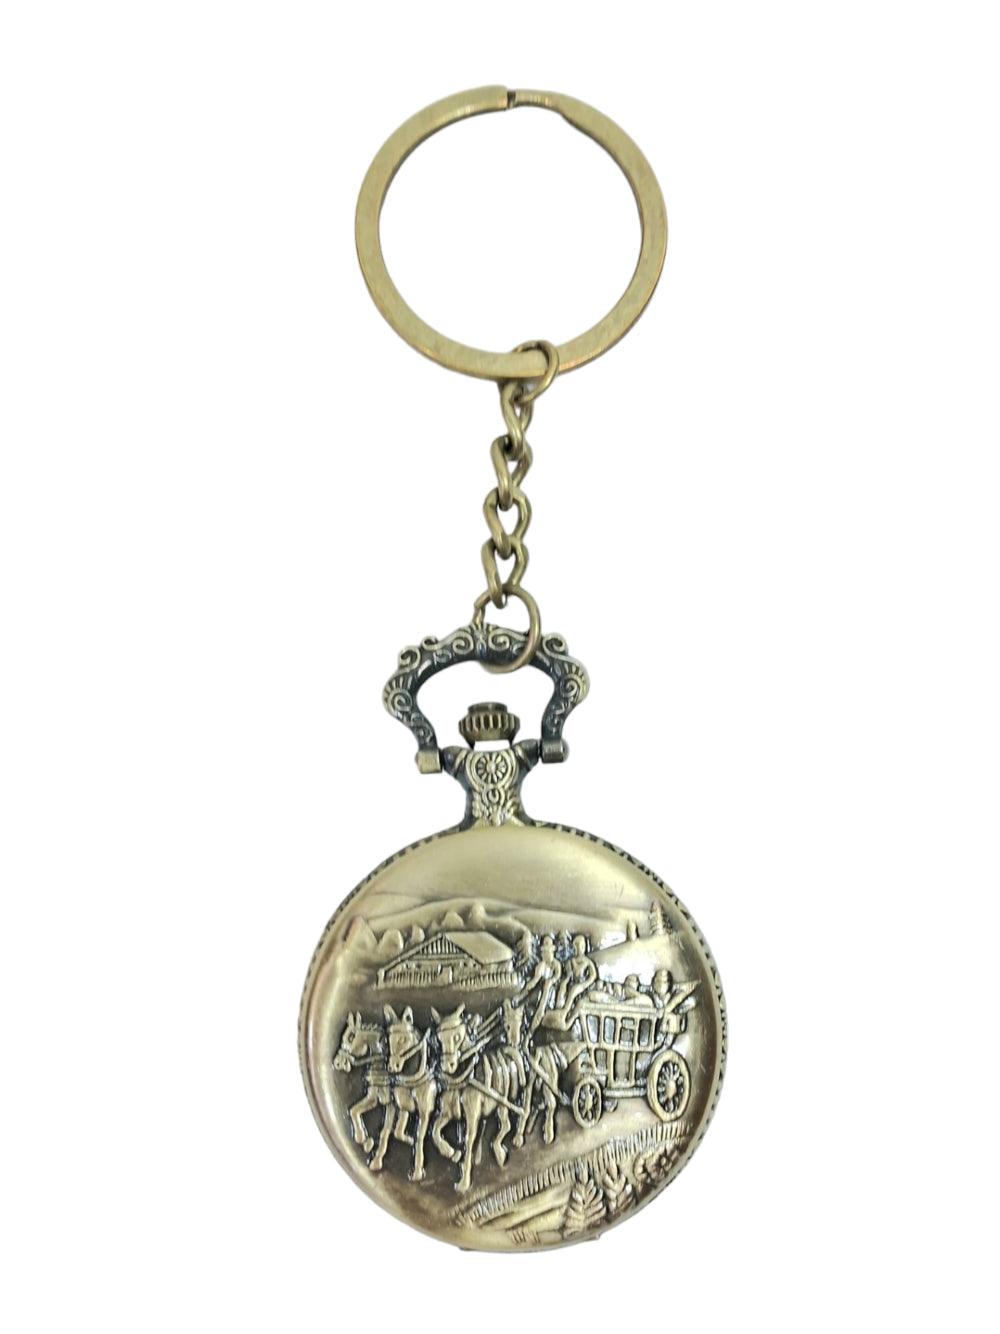 Antique Watch | Metal Keychain | Pocket Watch